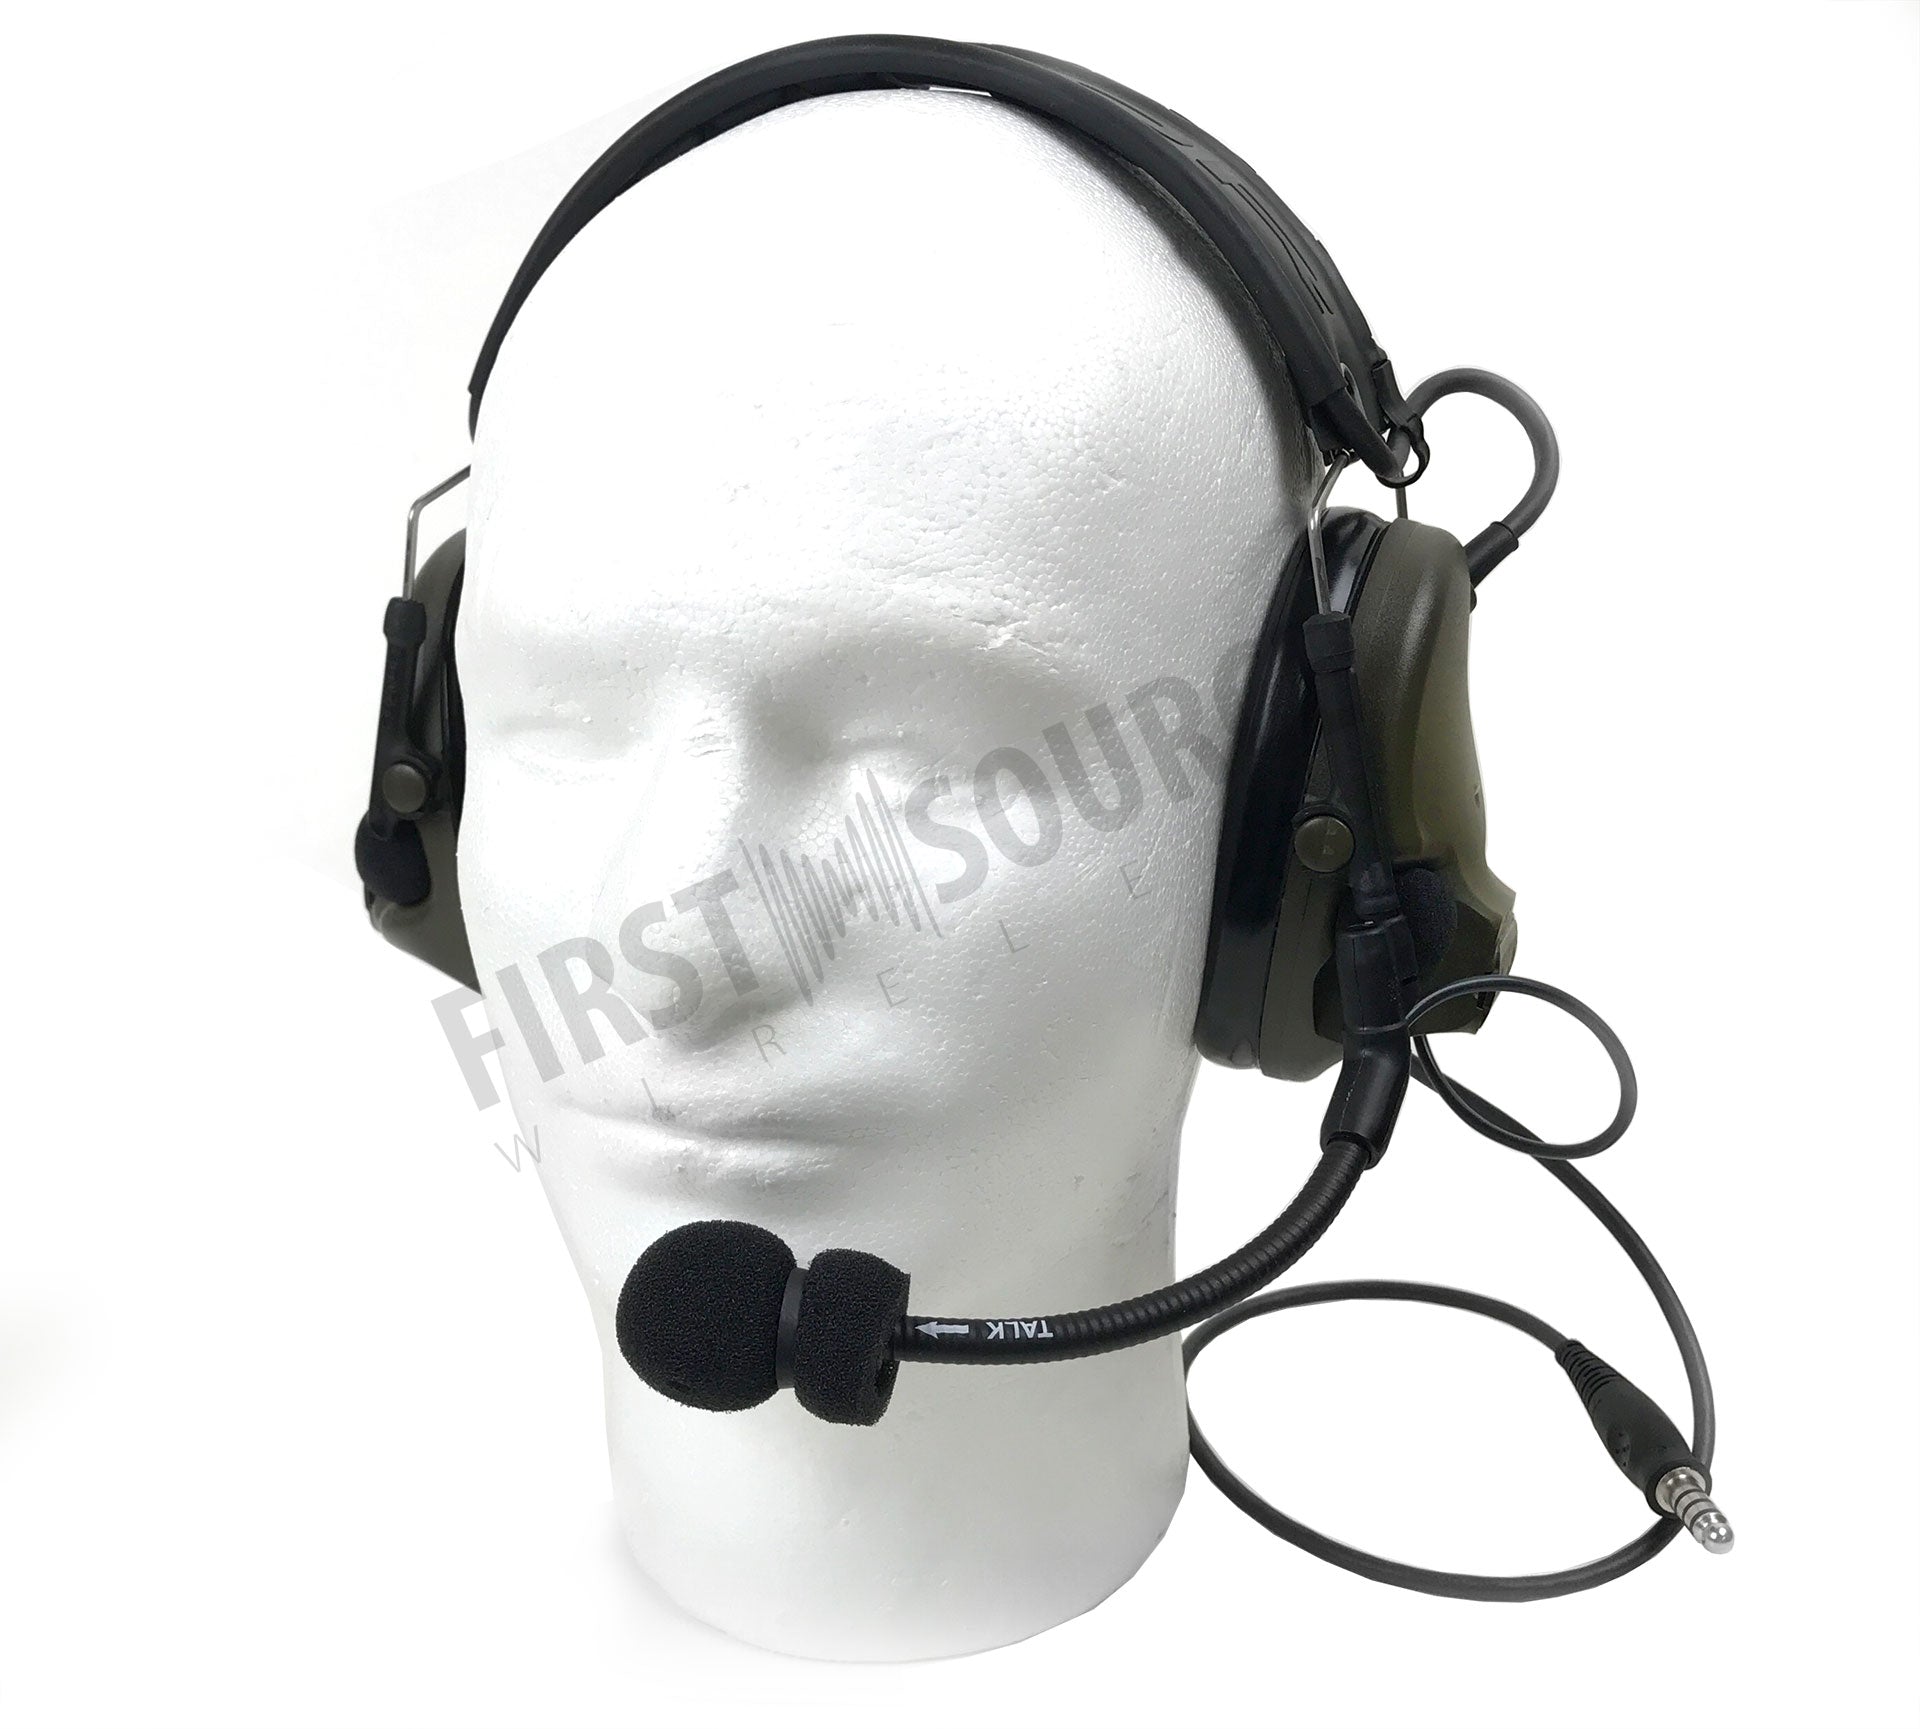 3M PELTOR ComTac V Headset MT20H682FB-47 GN, dobrável, cabo único, microfone dinâmico padrão, fiação NATO, verde